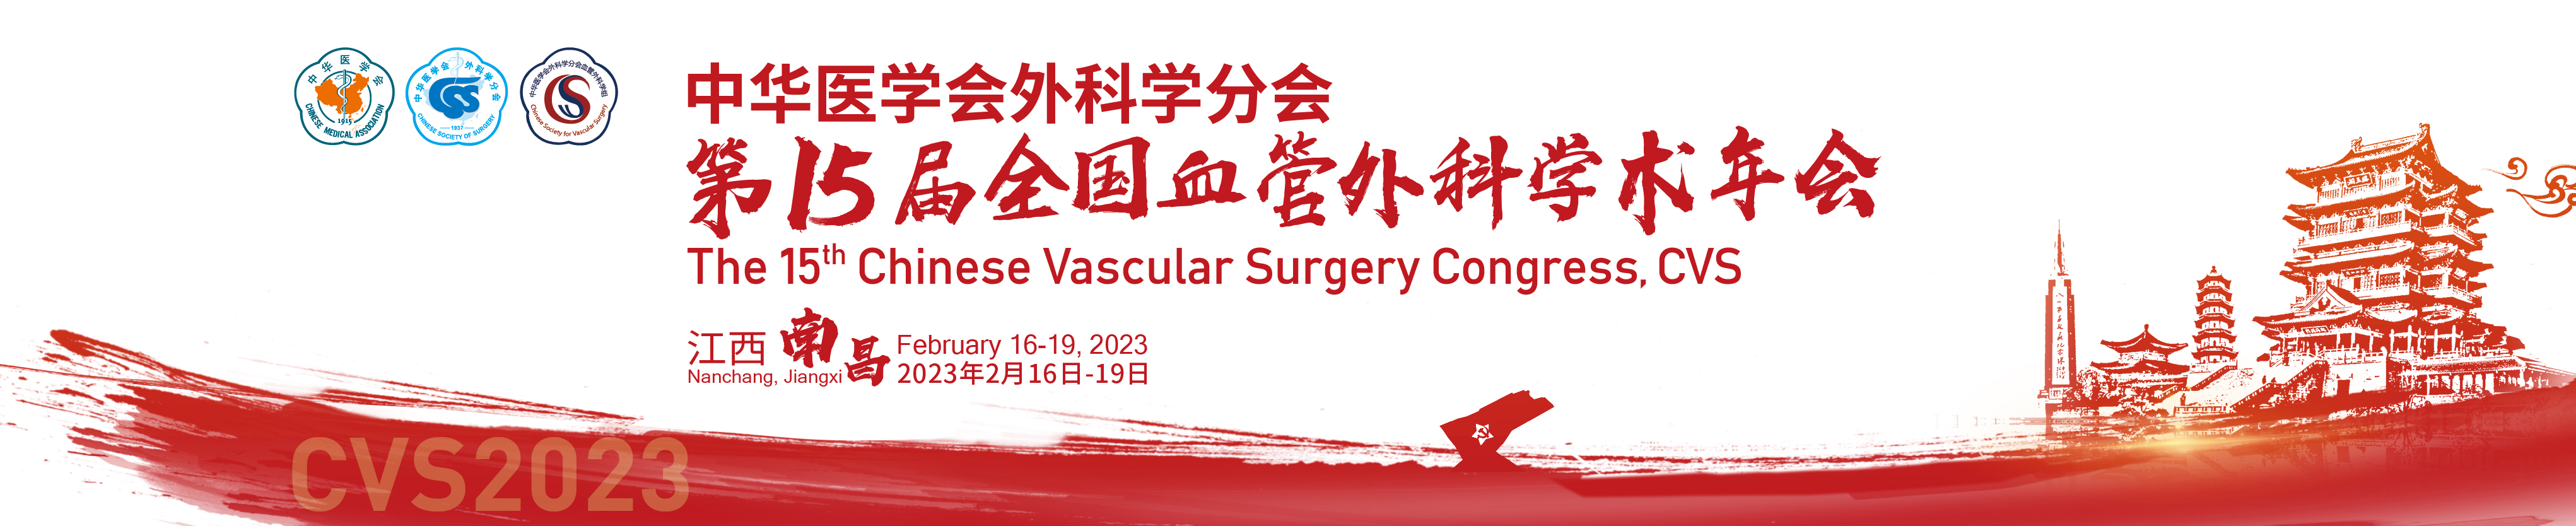 中华医学会外科学分会第15届全国血管外科学术年会